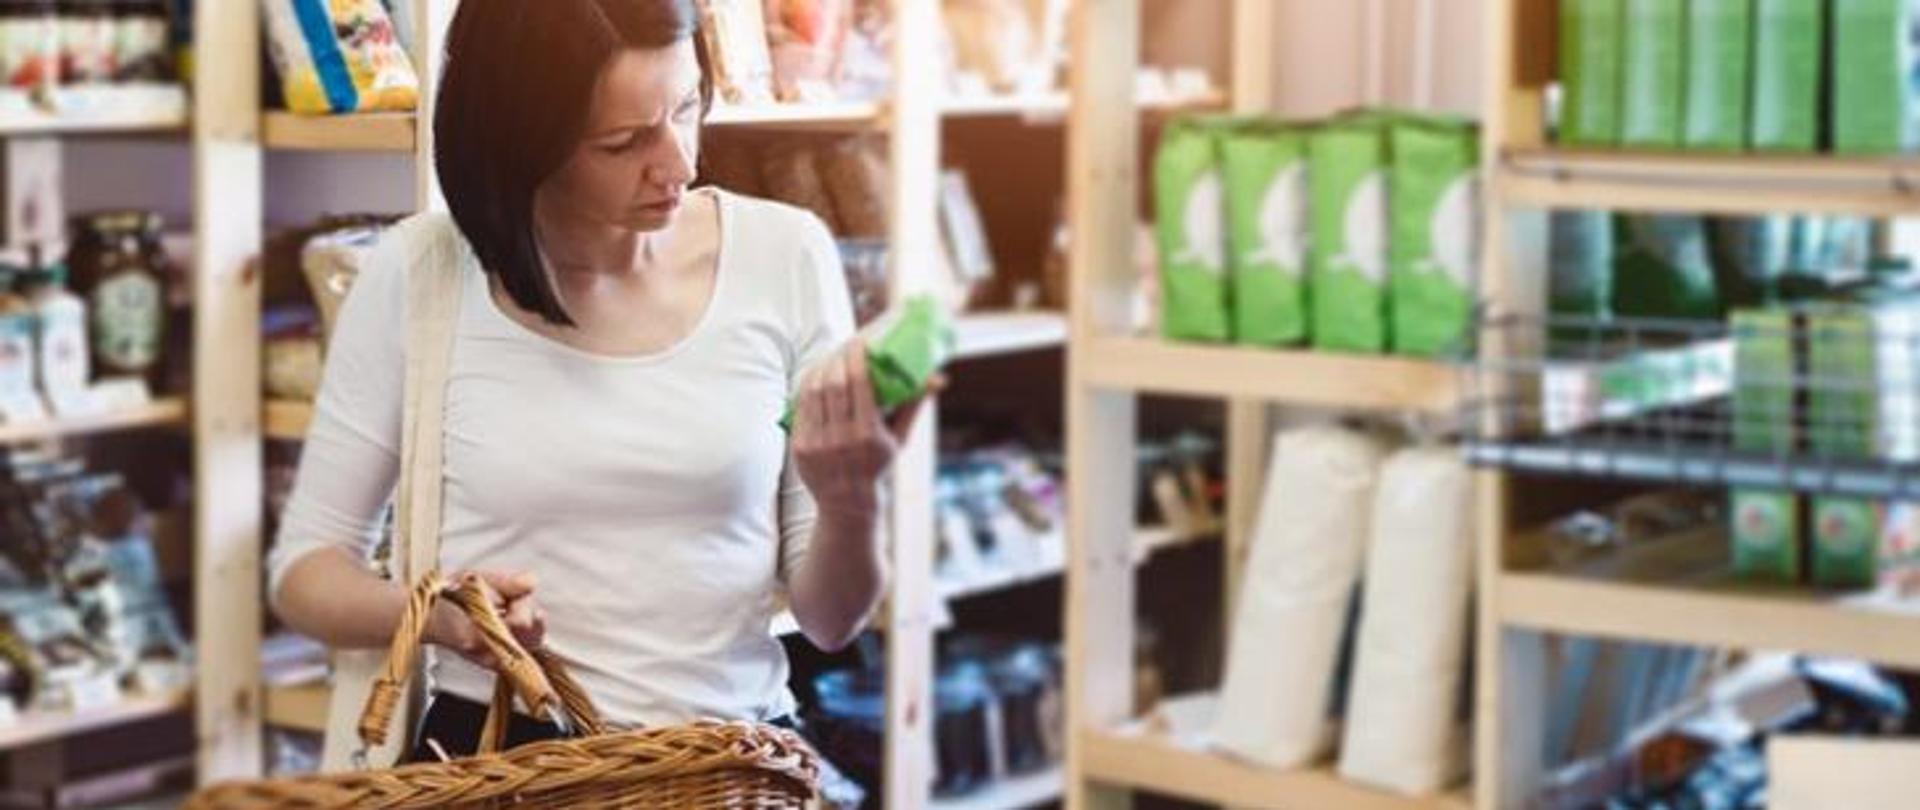 kobieta oglądająca produkty w sklepie